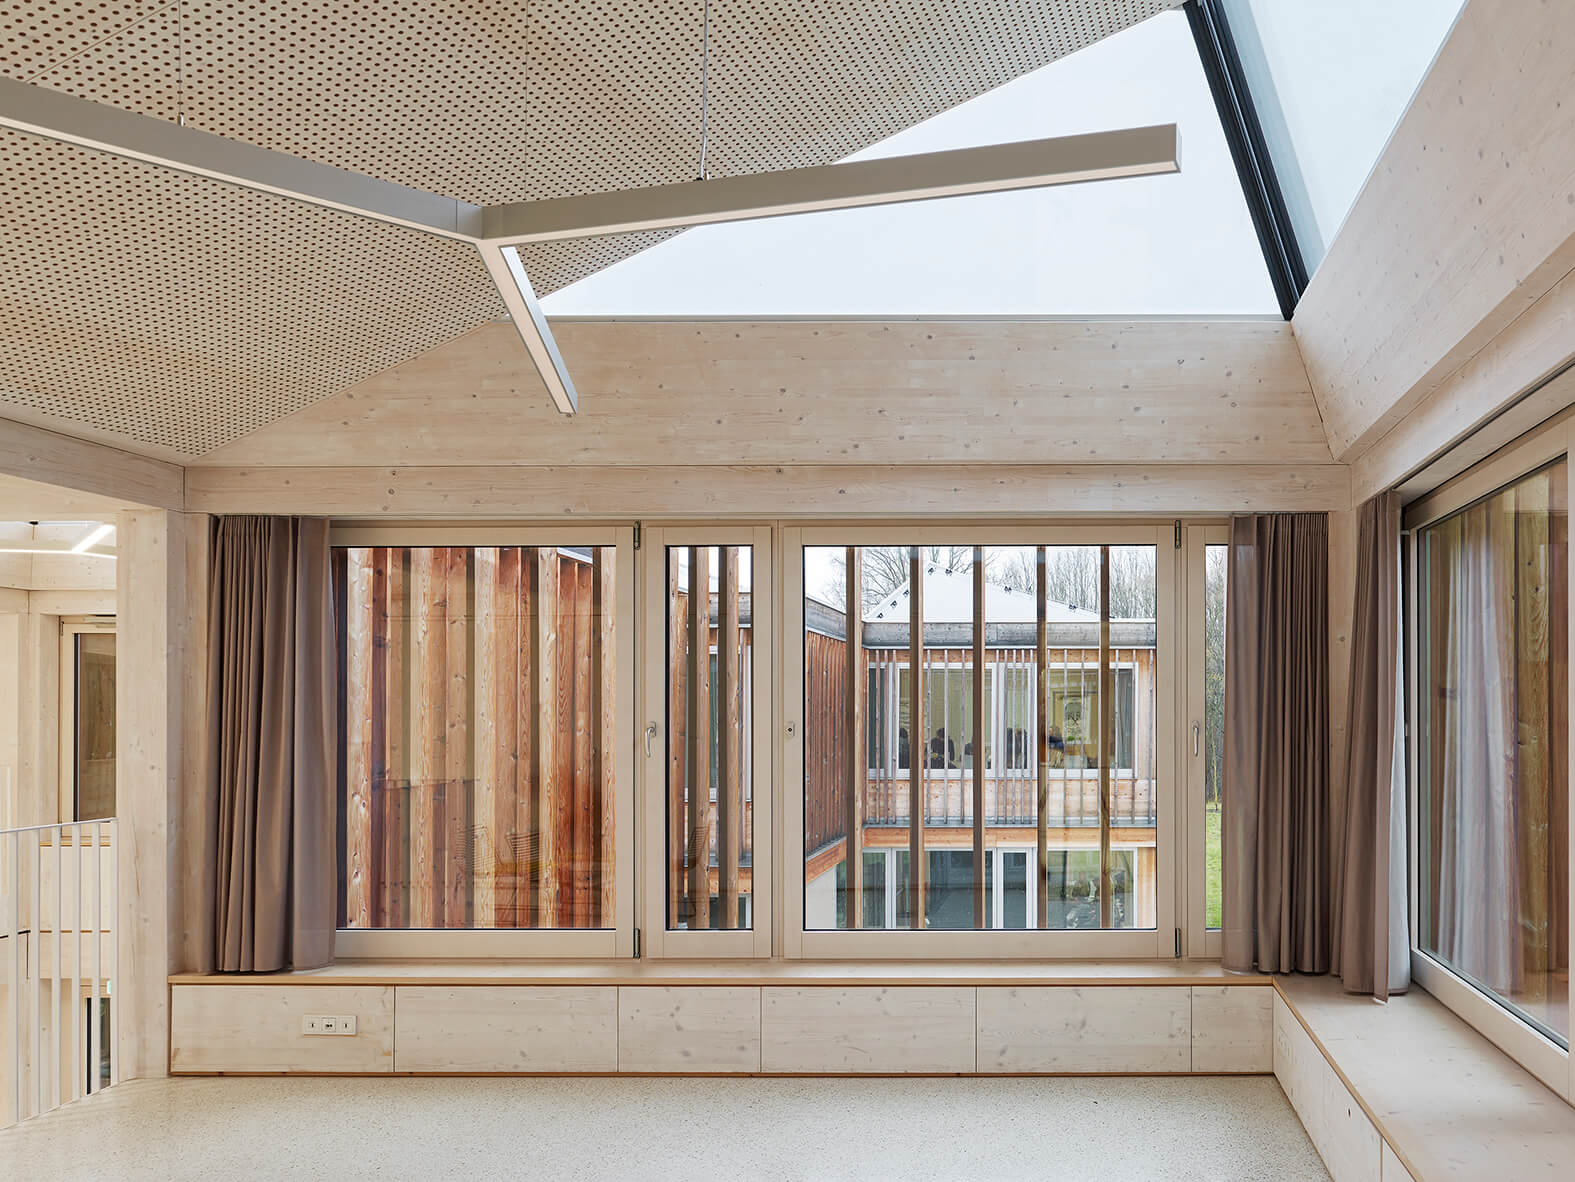 Um die passive Sonnenenergienutzung zu ermöglichen, wurden an der Fassade Sonnenschutzverglasungen in Form von dreifach verglasten transparenten Flächen eingesetzt.